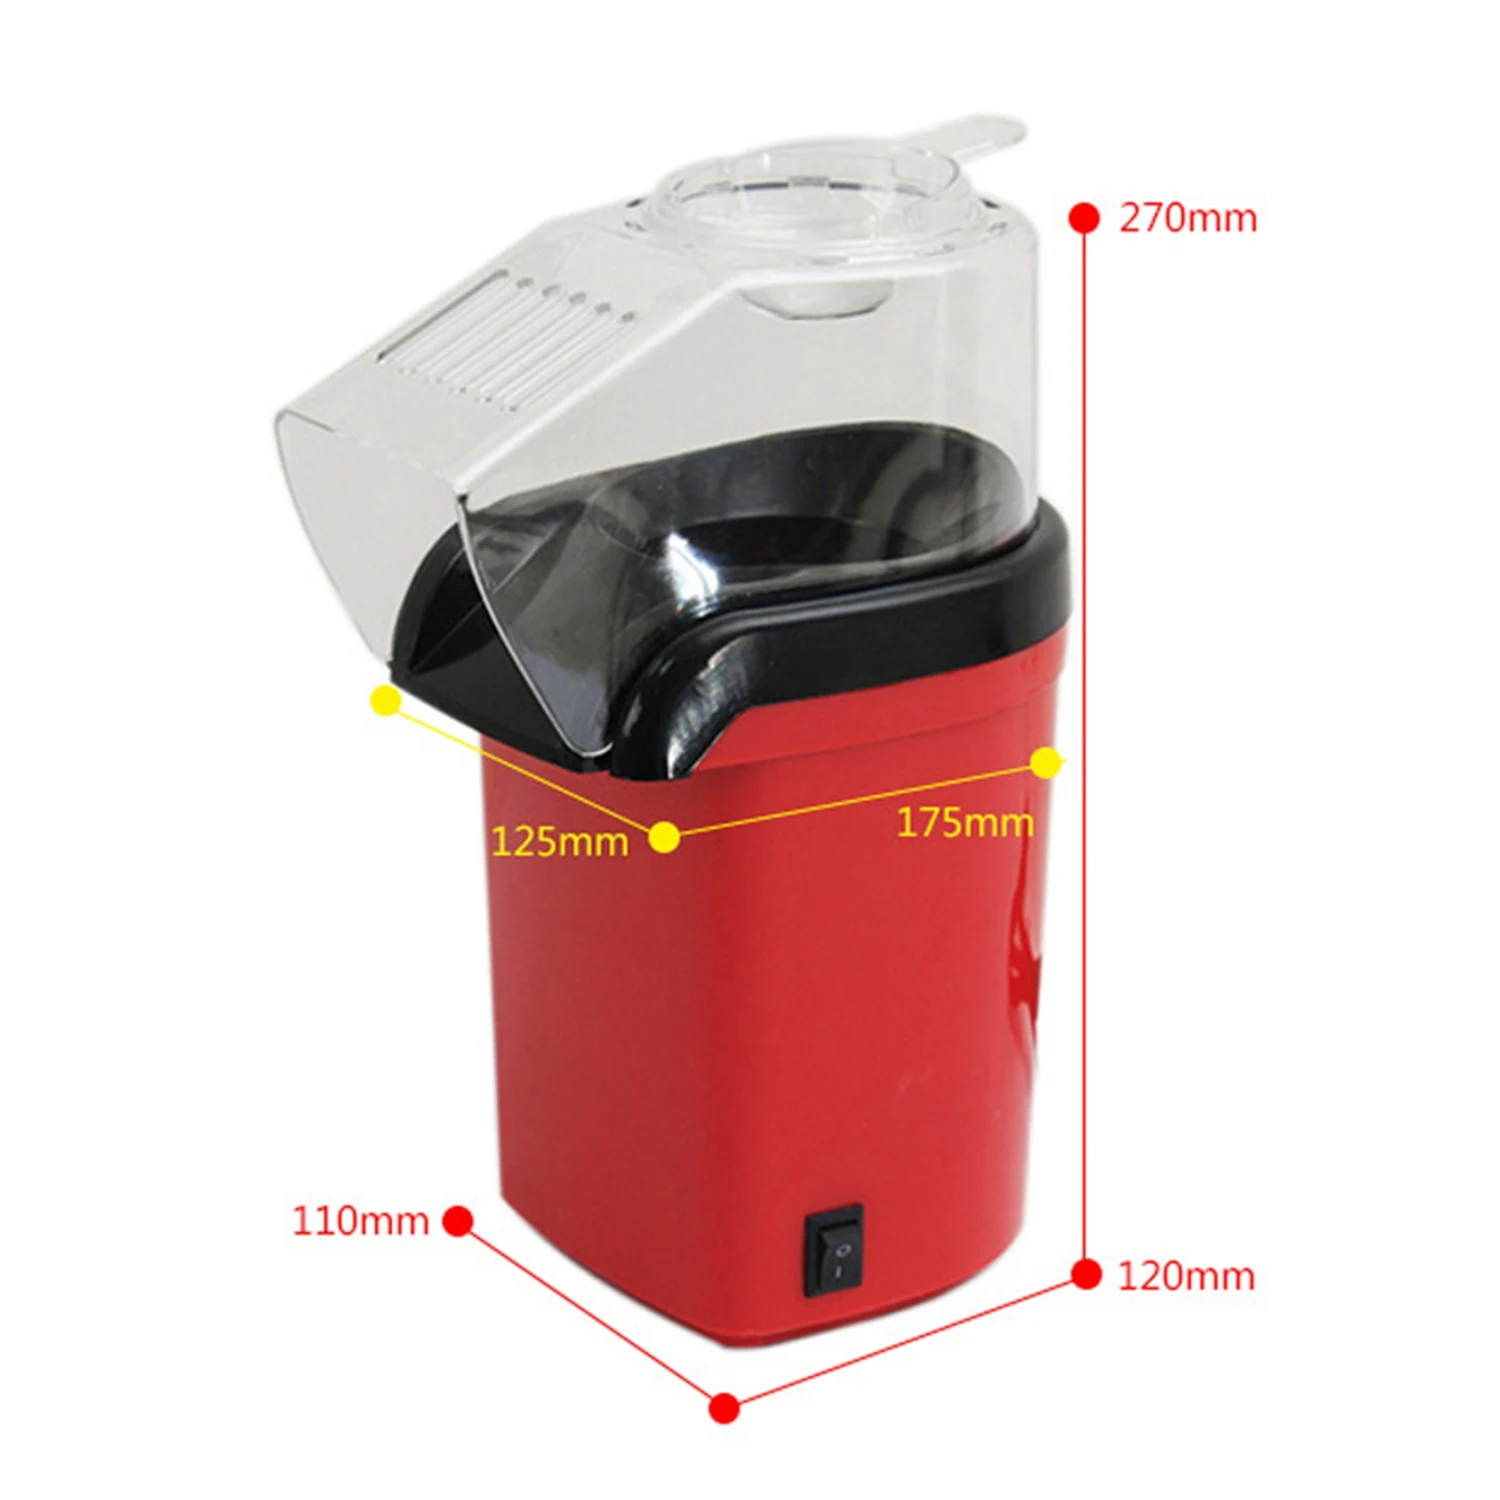 

SANQ 1200W 110V Mini Household Healthy Hot Air Oil-Free Popcorn Maker Machine Corn Popper For Home Kitchen